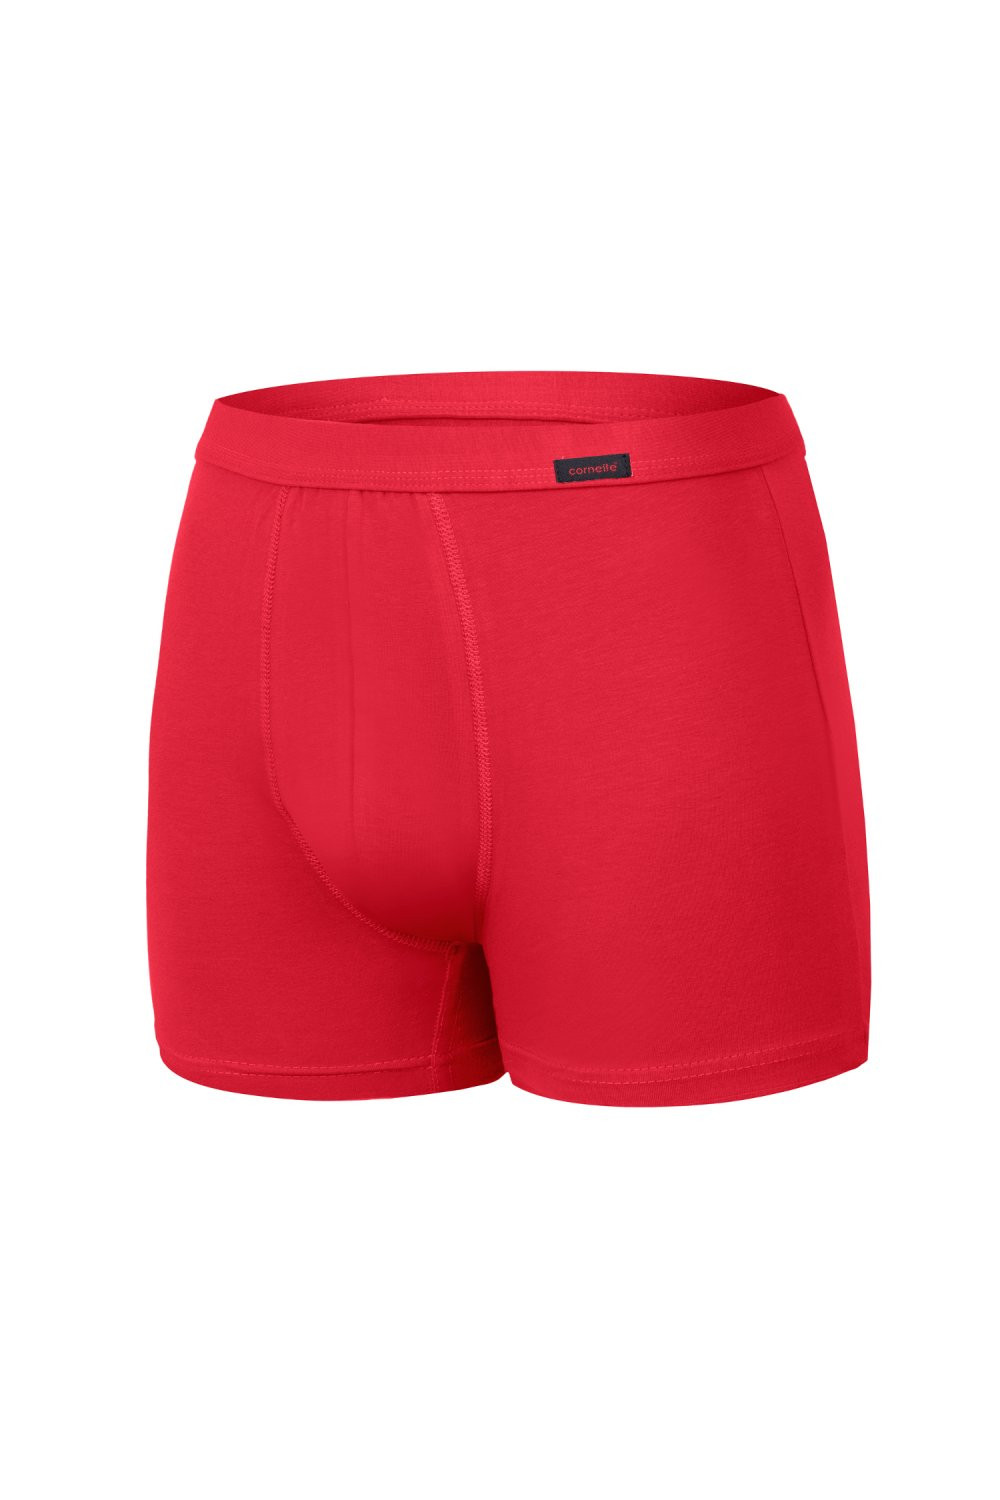 Pánské boxerky 092 Authentic plus red - CORNETTE Červená 5XL